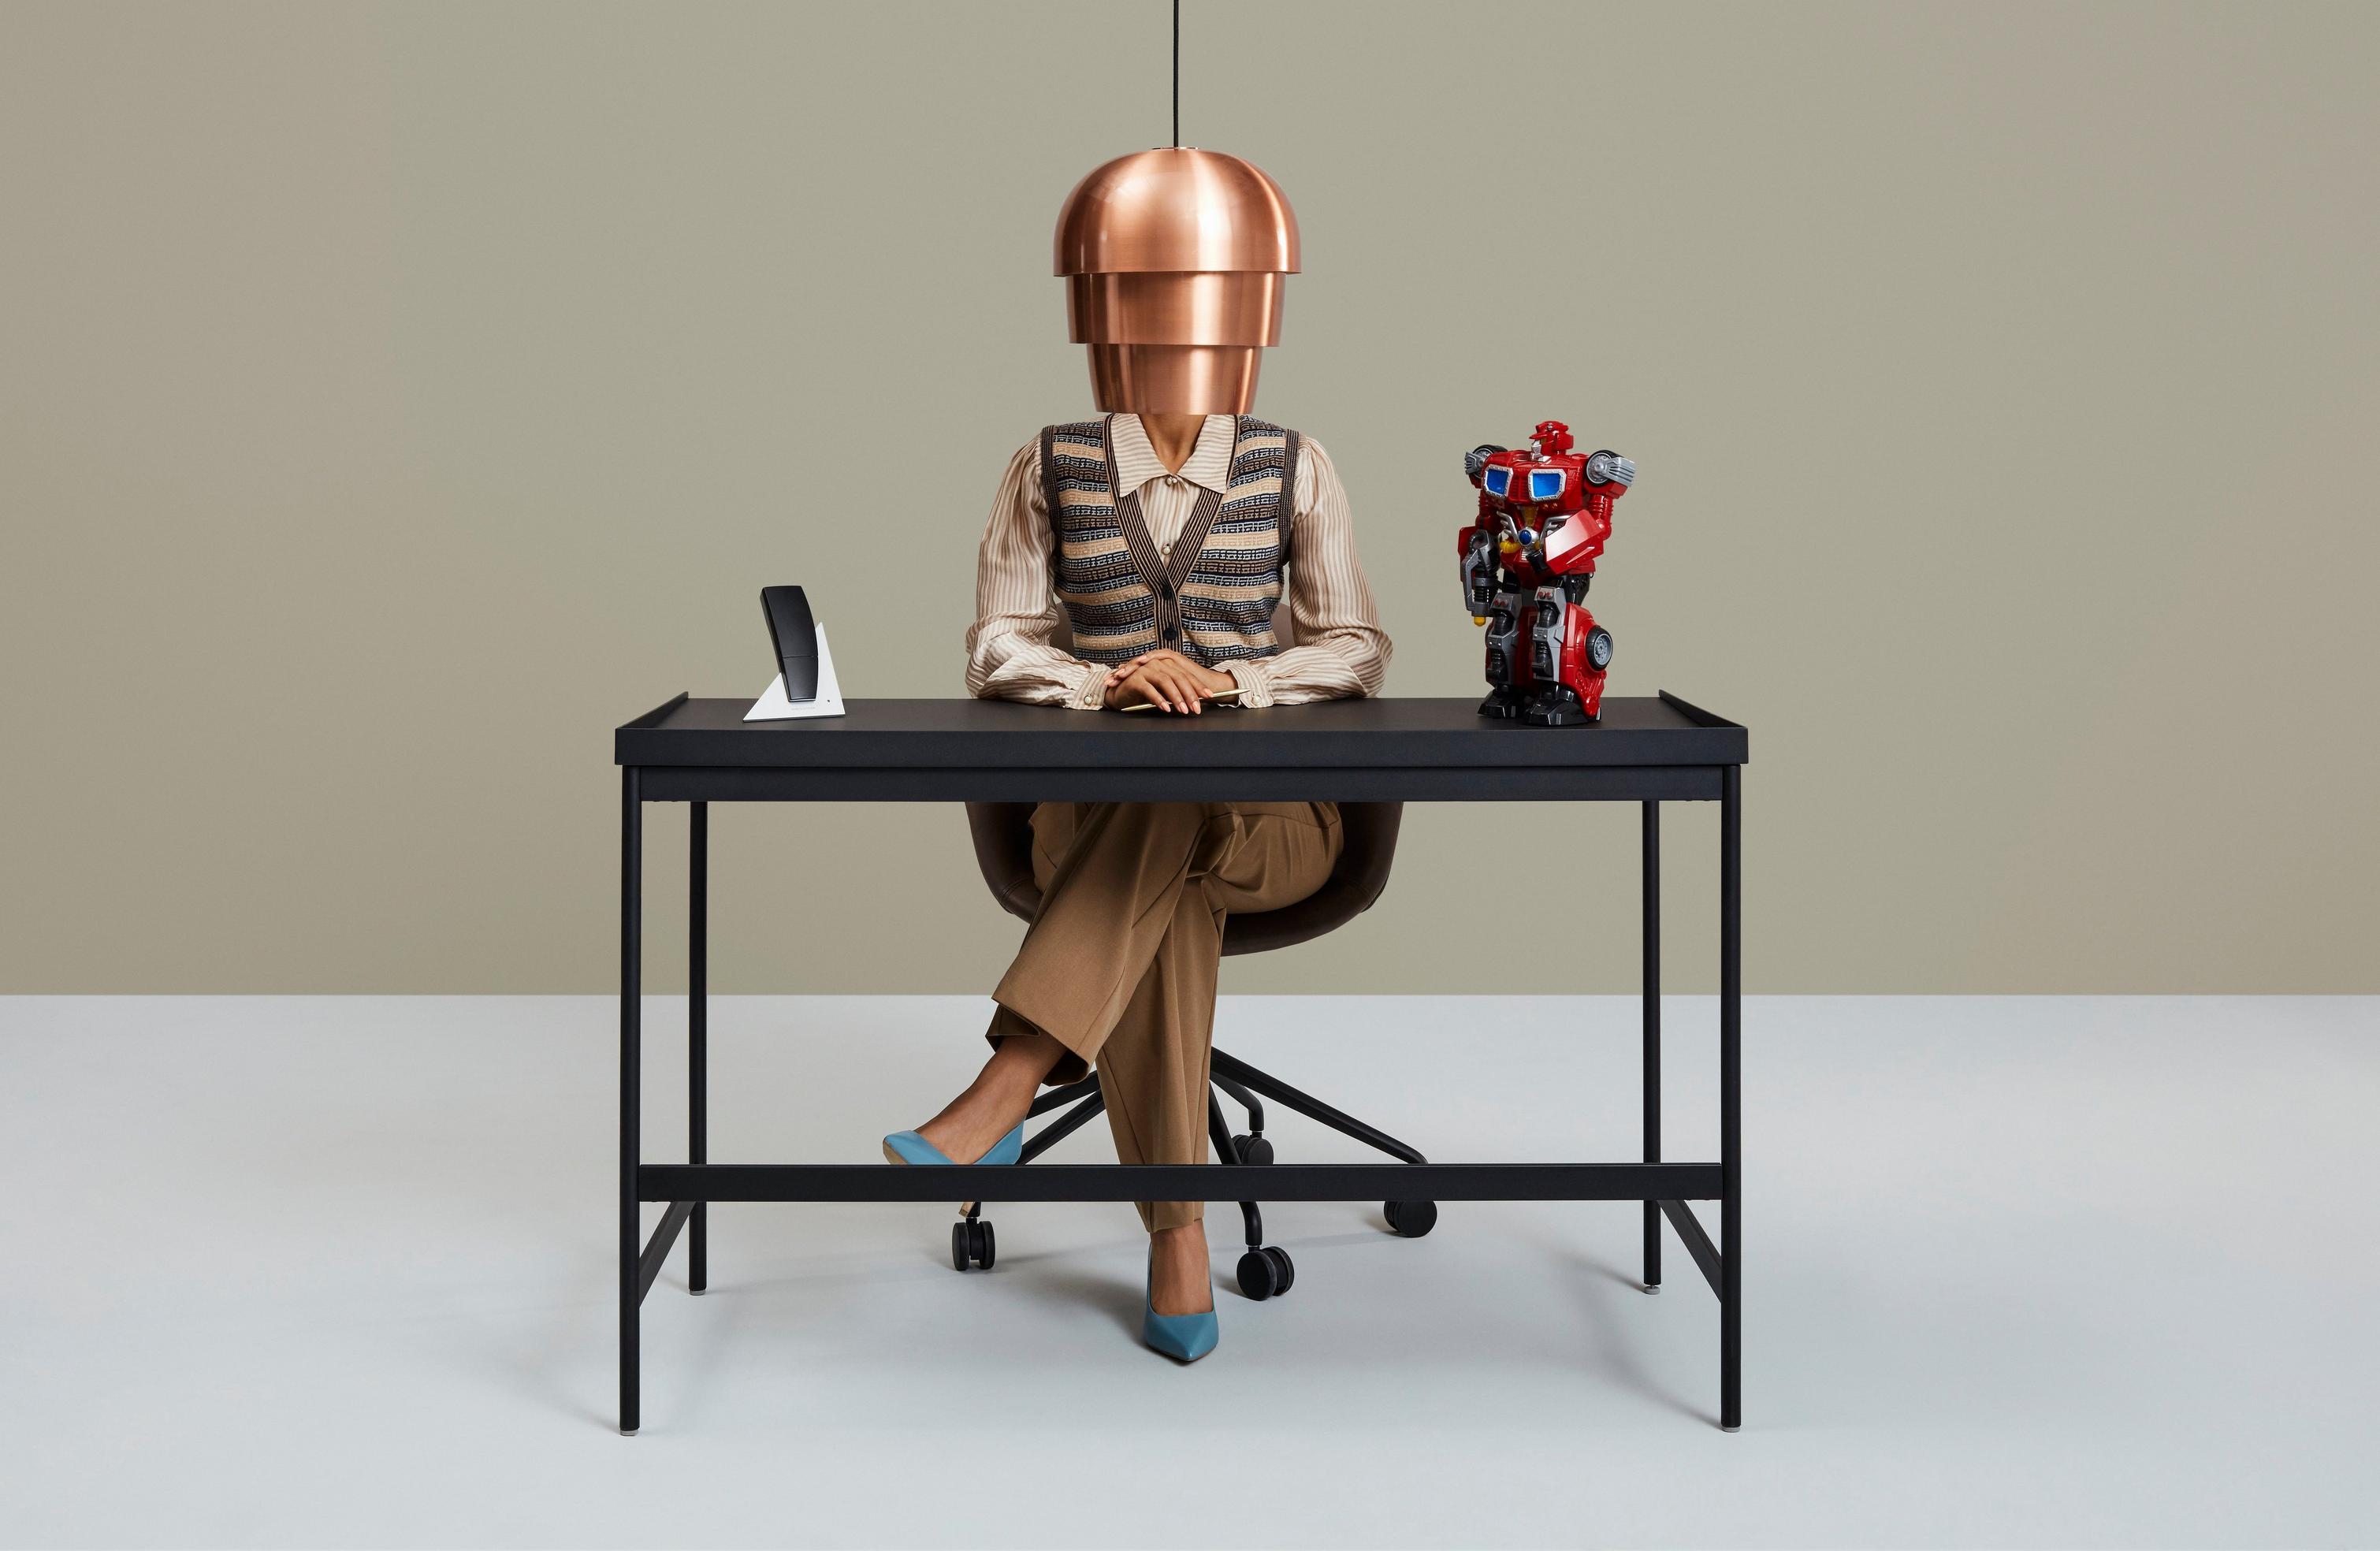 デスクに着いている人物の顔にランプシェードが重なっている。デスクの上には電話とカラフルなロボットのおもちゃが置かれている。